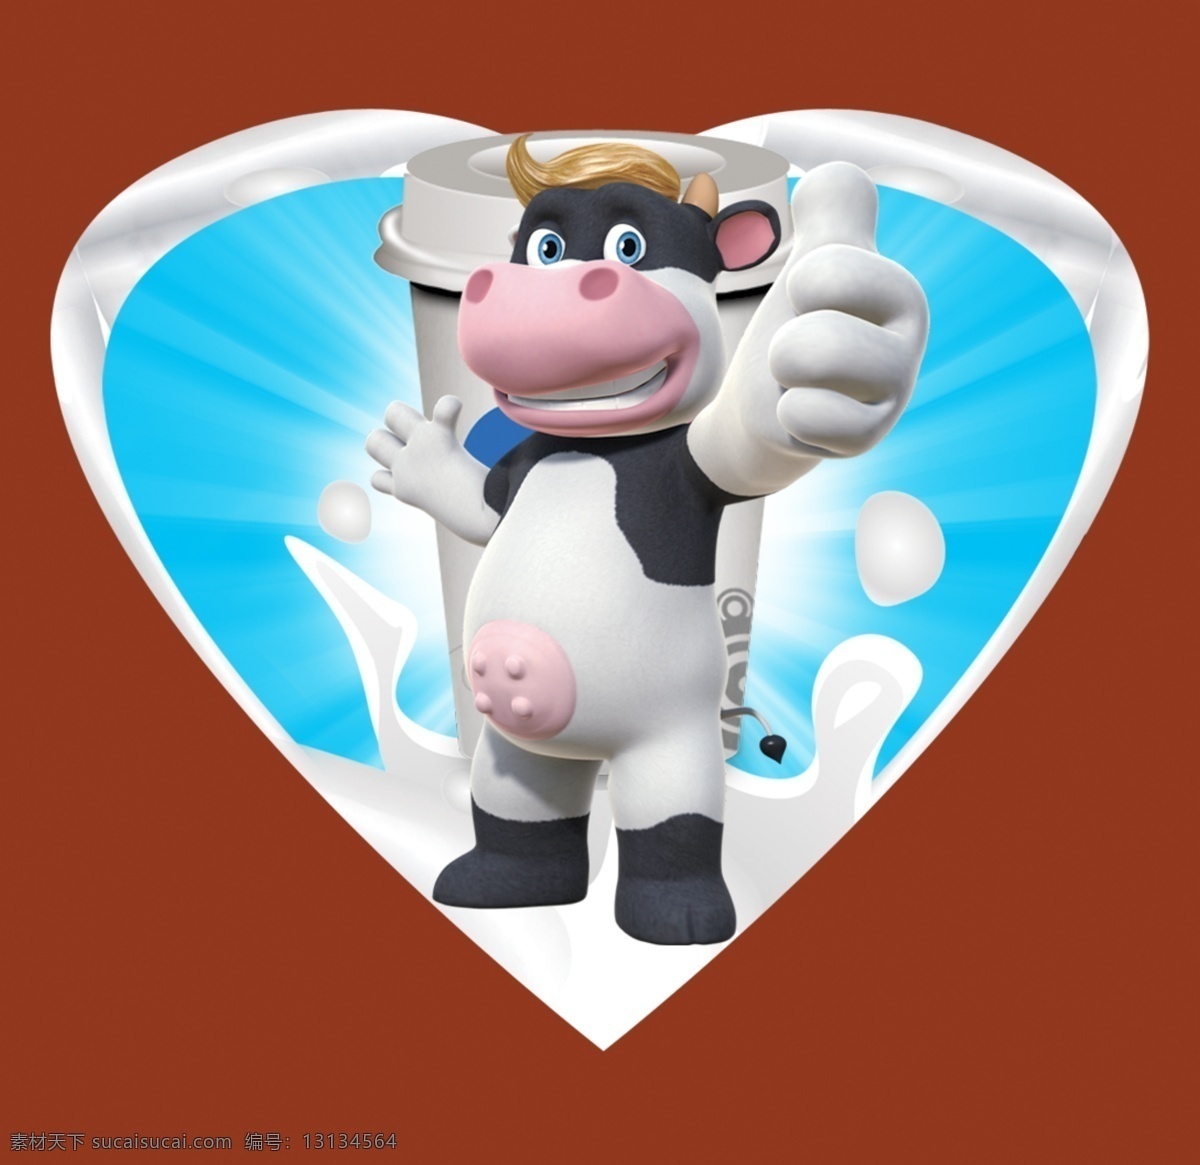 奶牛 logo 分层 牛奶素材 源文件 奶牛素材下载 奶牛模板下载 巴氏奶 奶茶纸杯 psd源文件 餐饮素材